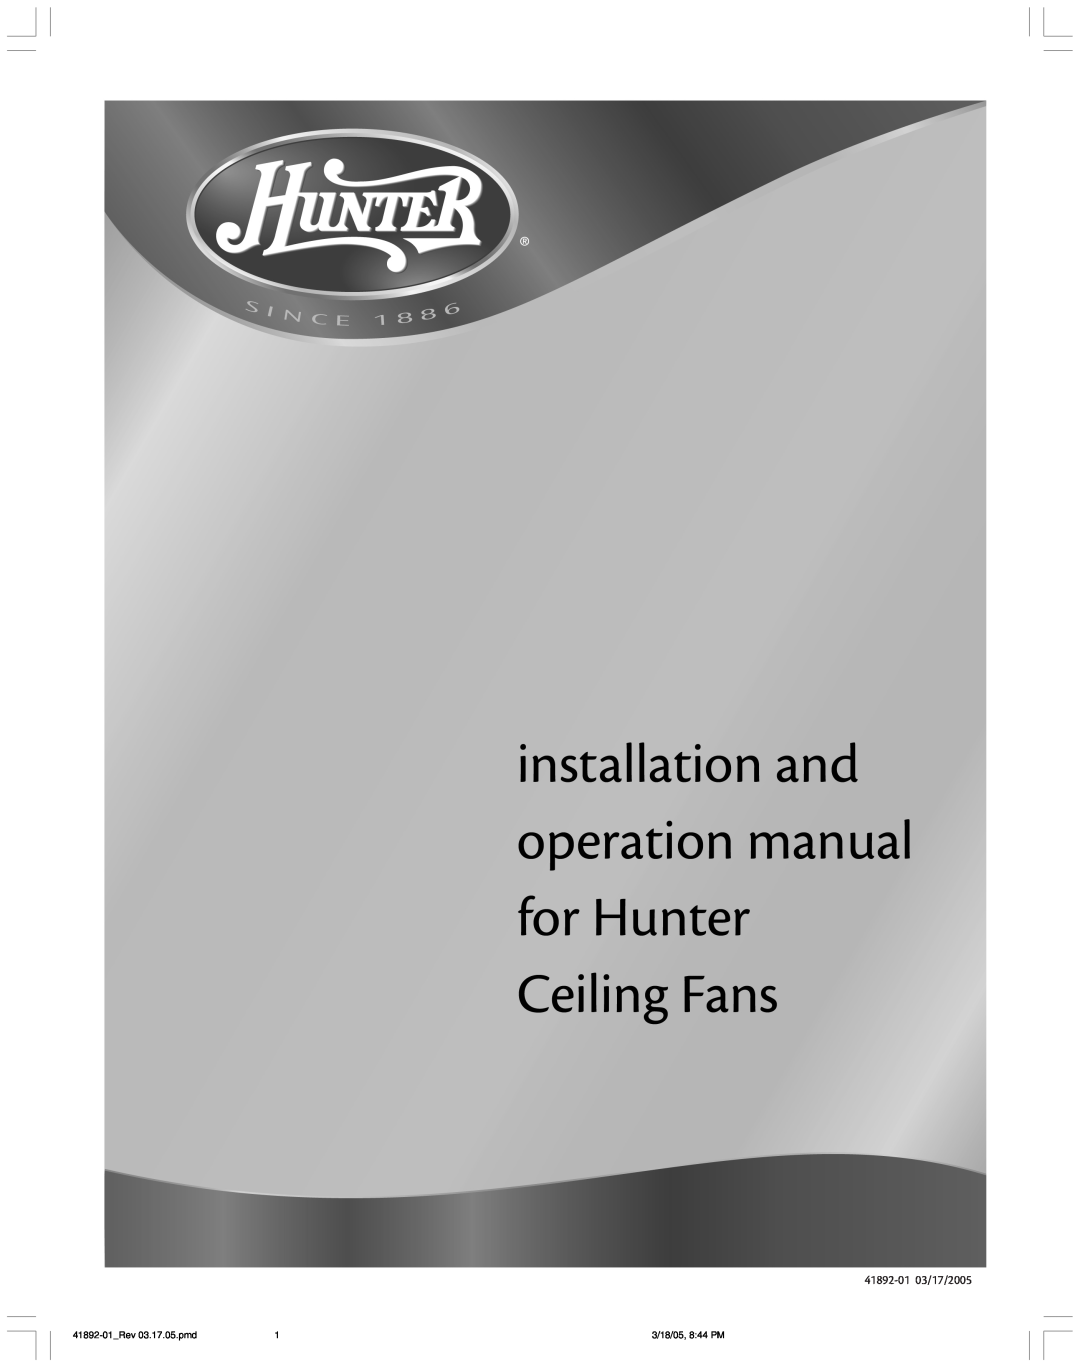 Hunter Fan manual Hunter Fan Company, 41892-0103/17/2005, 41892-01 Rev03.17.05.pmd, 3/18/05, 8 44 PM 